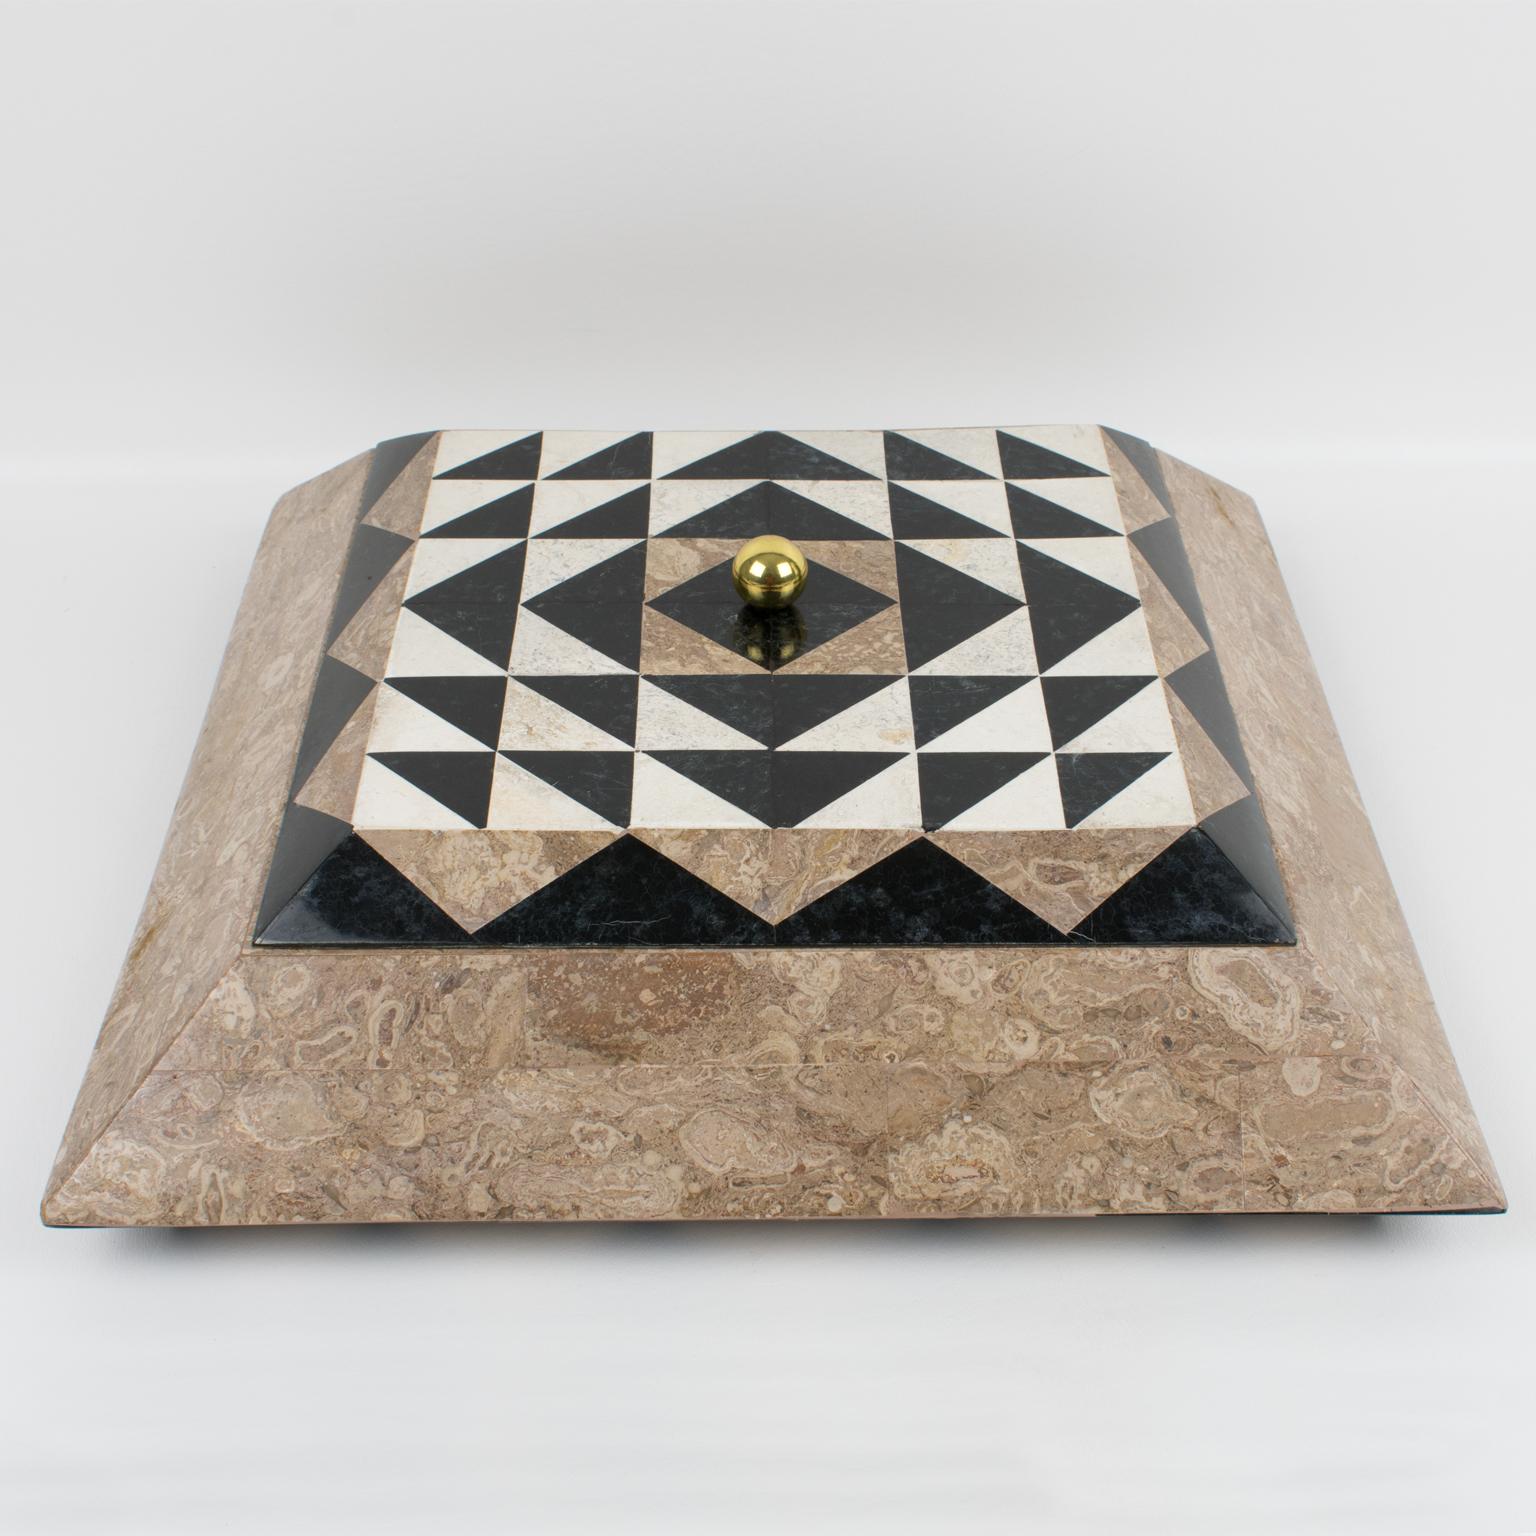 Une boîte à couvercle spectaculaire conçue par Maitland-Smith dans les années 1980, réalisée en marbre tesselé, en pierre, en travertin et en laiton. Le design pyramidal de forme carrée arbore des couleurs beige sable, noir et blanc cassé avec un